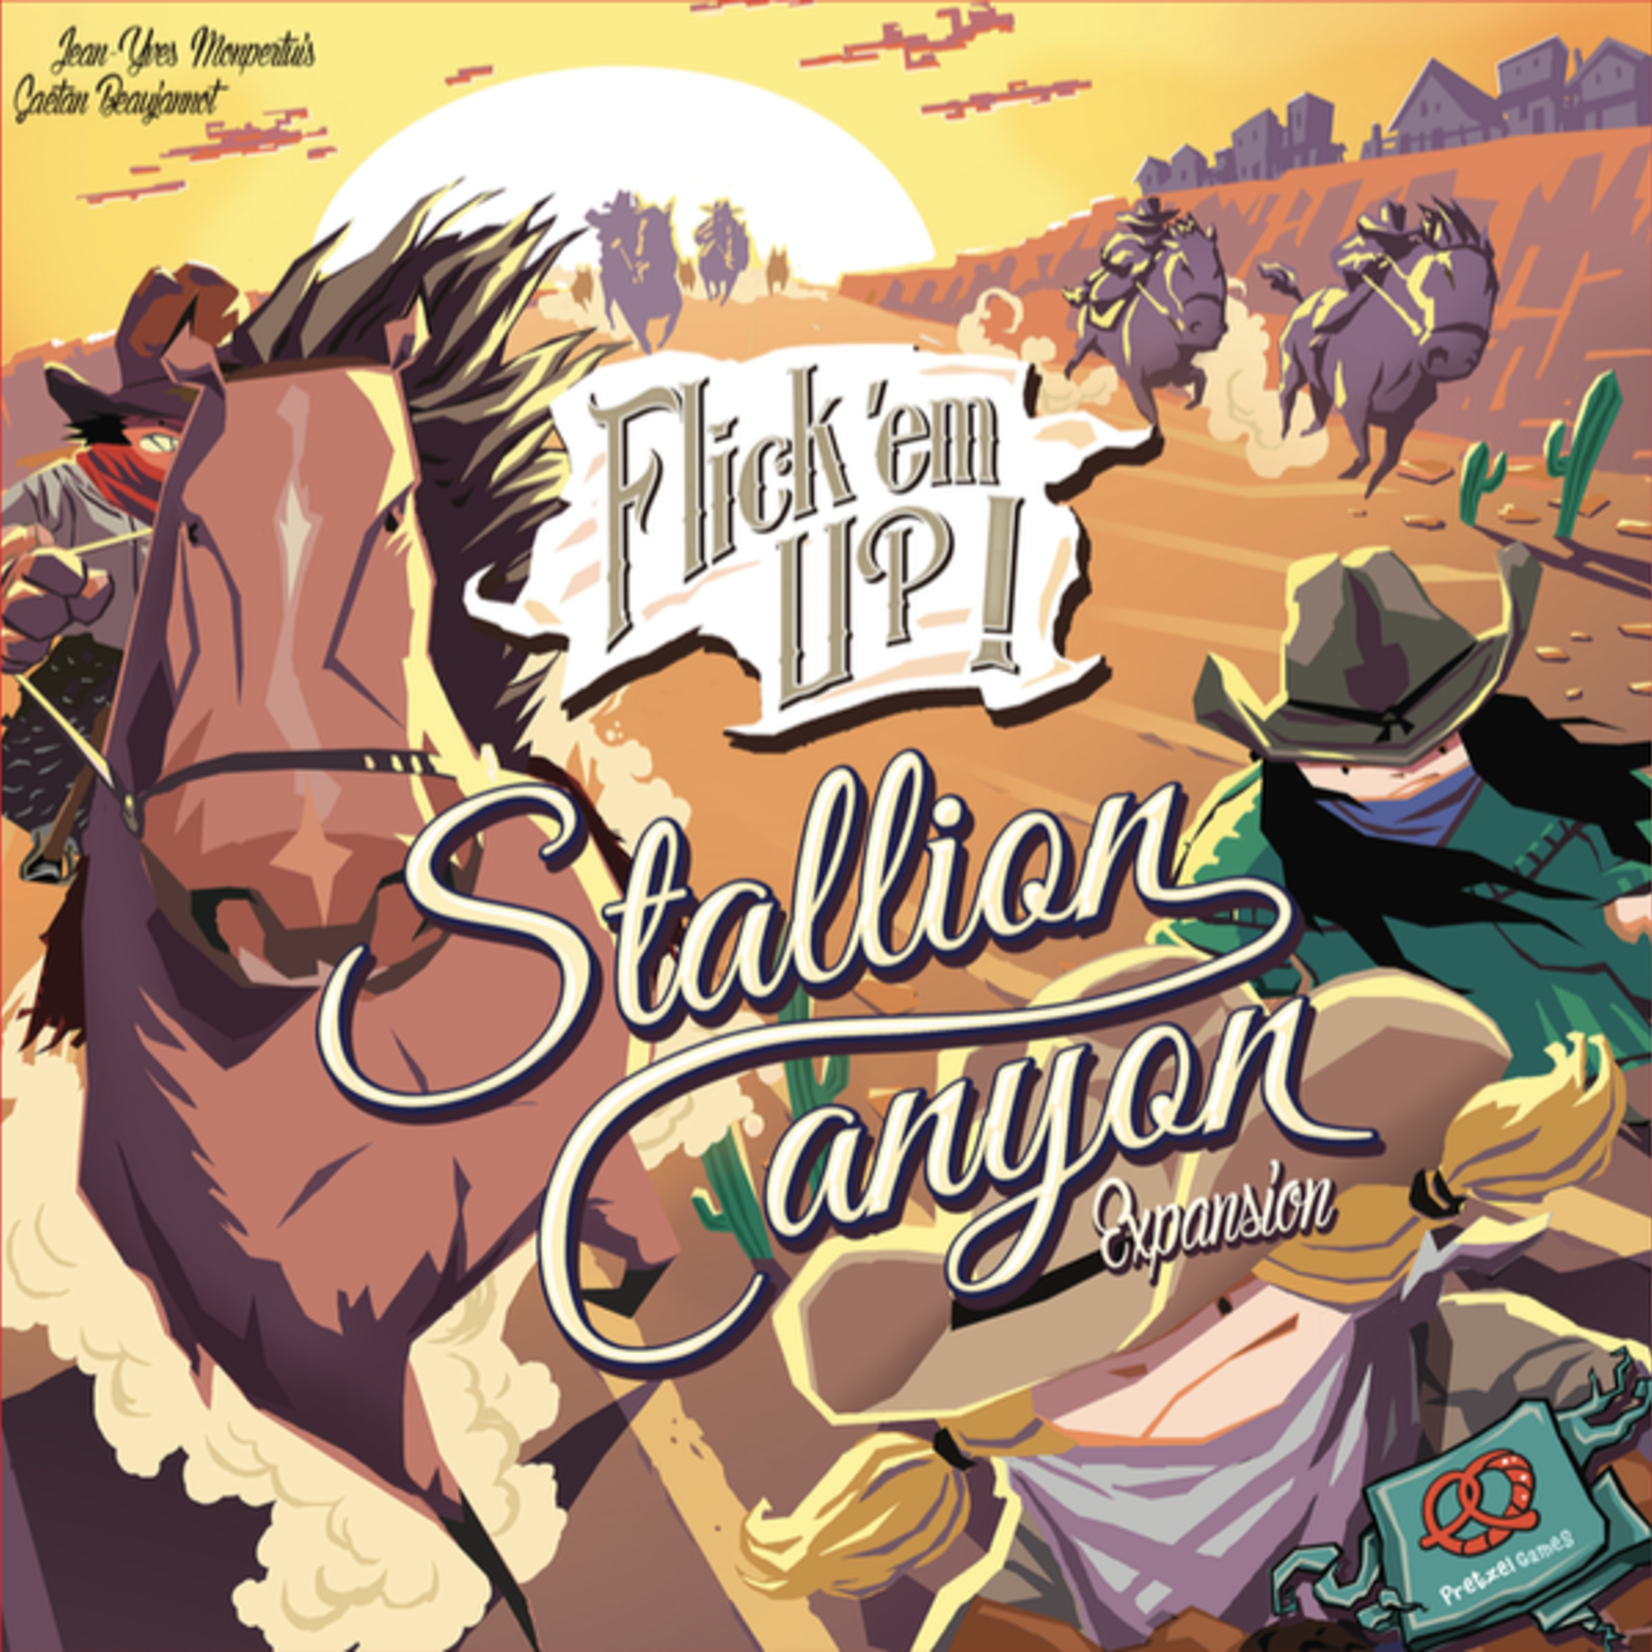 Pretzel Games Flick Em Up! Stallion Canyon Expansion